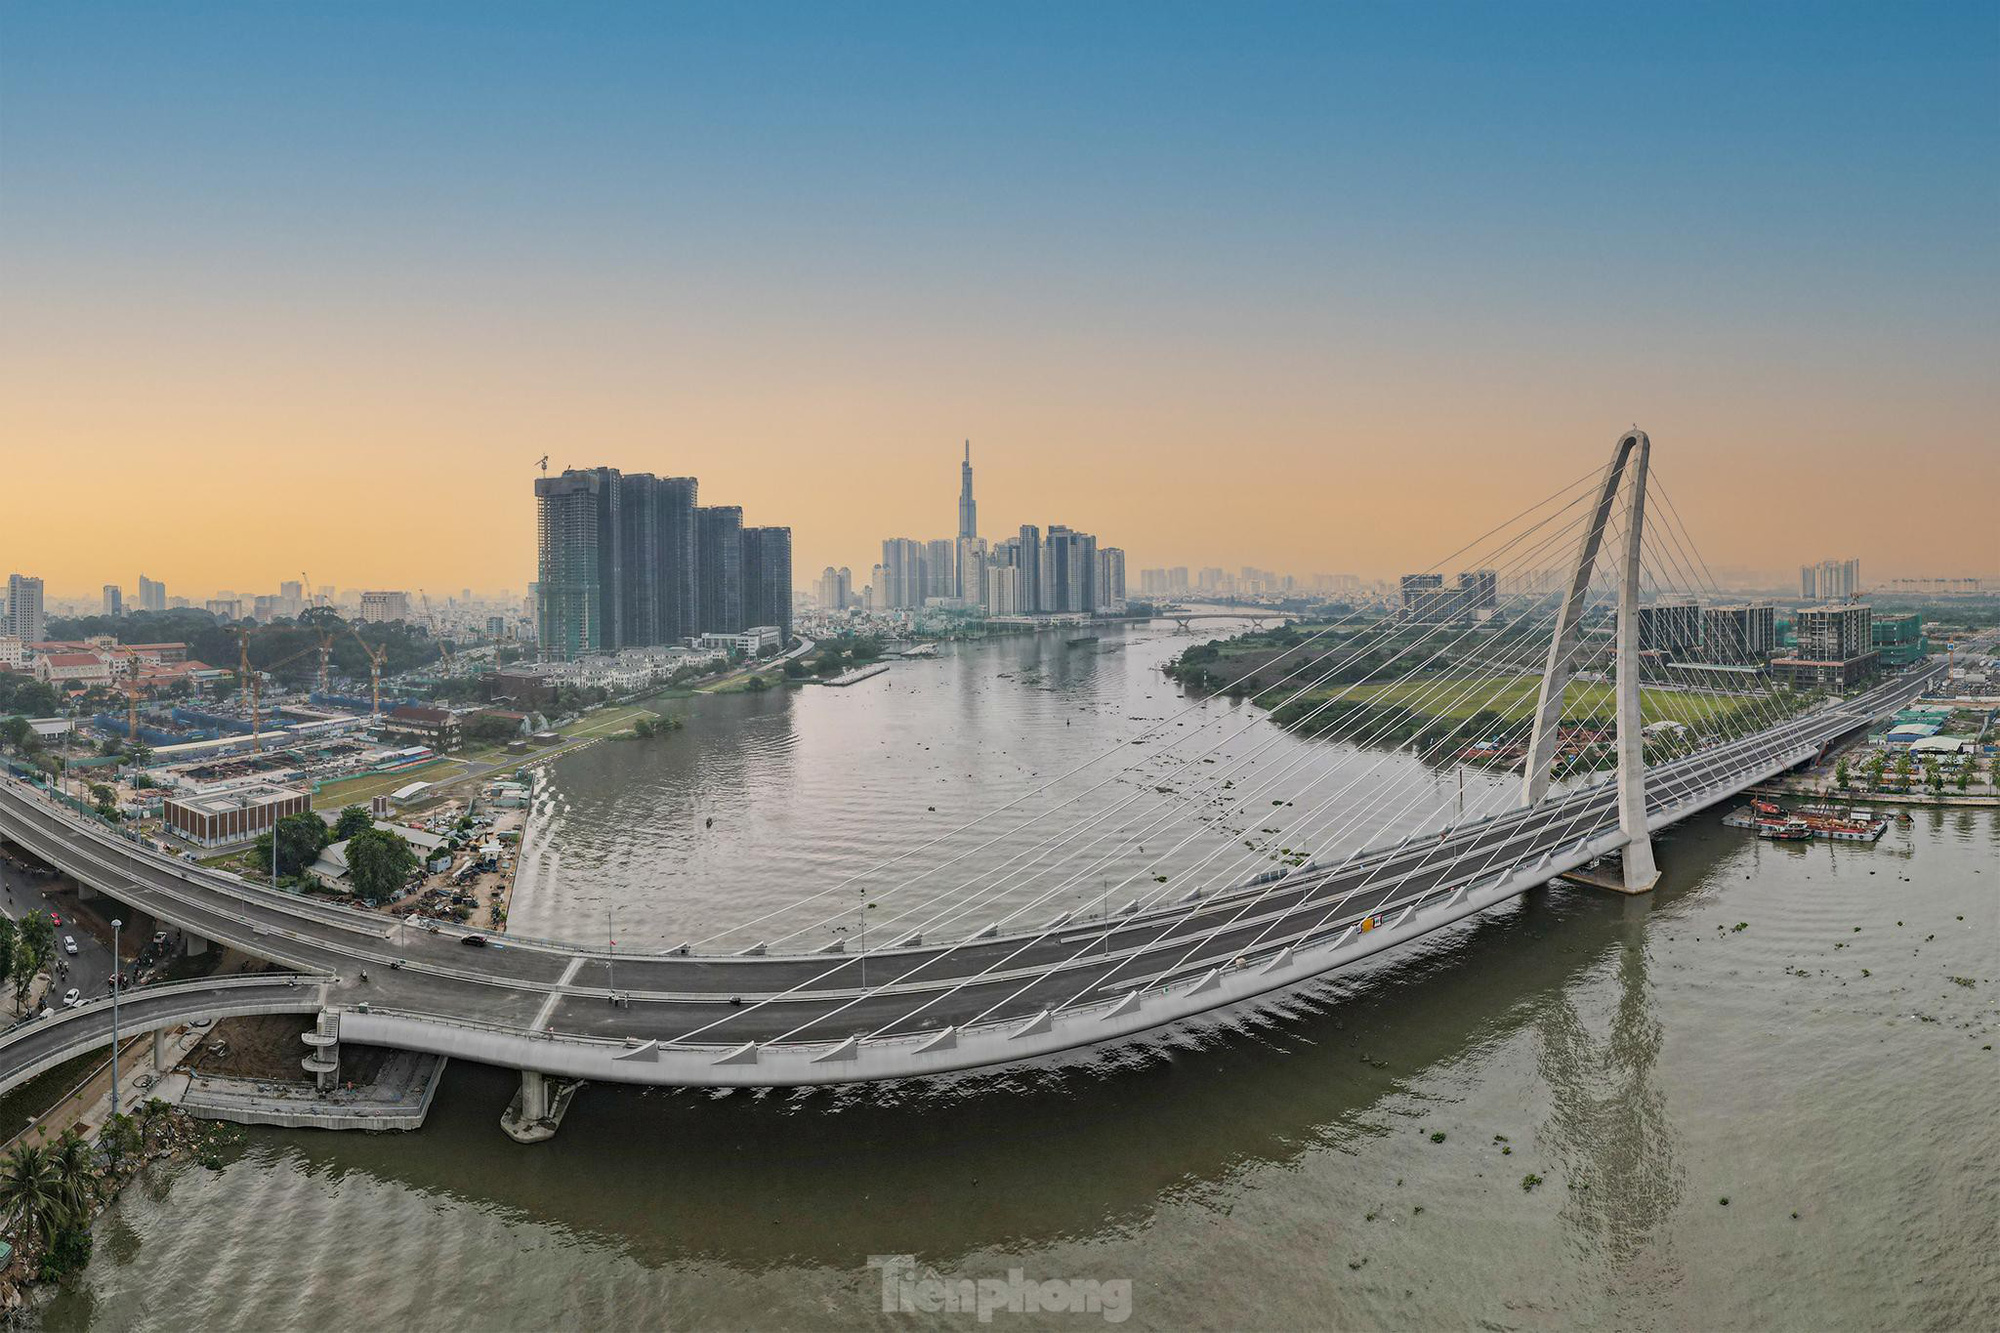 Ngắm thành phố từ cầu Thủ Thiêm 2 bắc qua sông Sài Gòn - Ảnh 4.